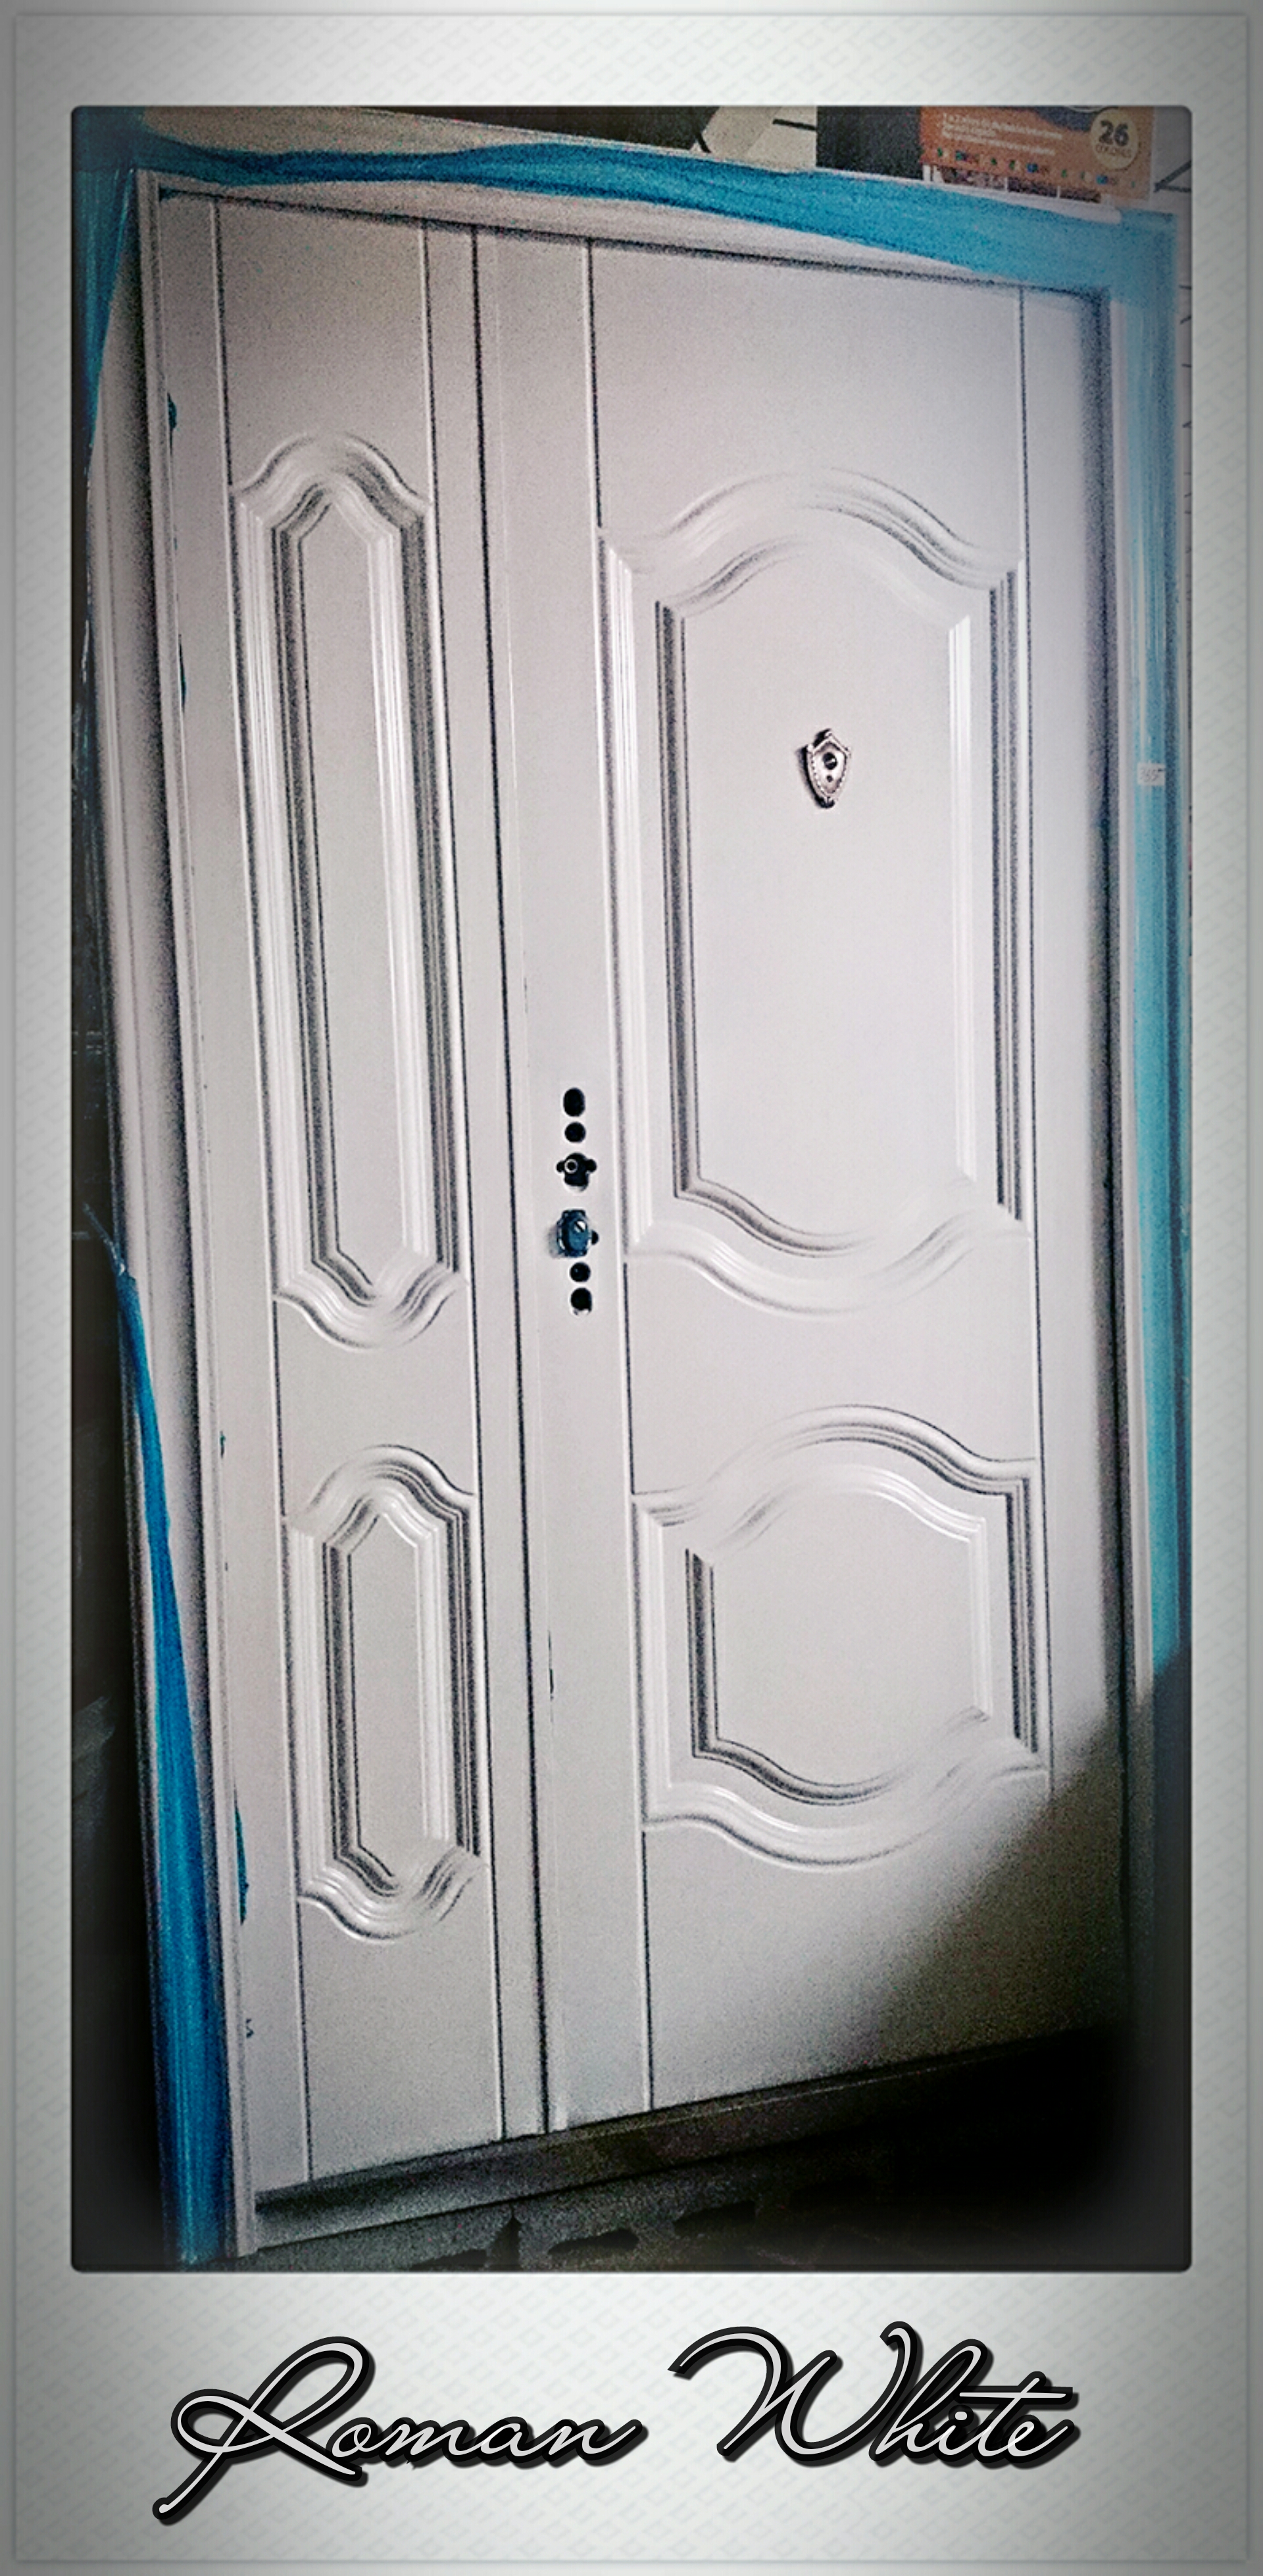 CASA GUO - ‼️BLACK SEPTIEMBRE‼️ ✨PUERTAS DE SEGURIDAD desde 👉$149.95✨  Renueva la puerta de su hogar con las Puertas Metálicas Multipuntos!  Incluyen marco y cerradura. ¡Seguridad y estilo en un solo paso!